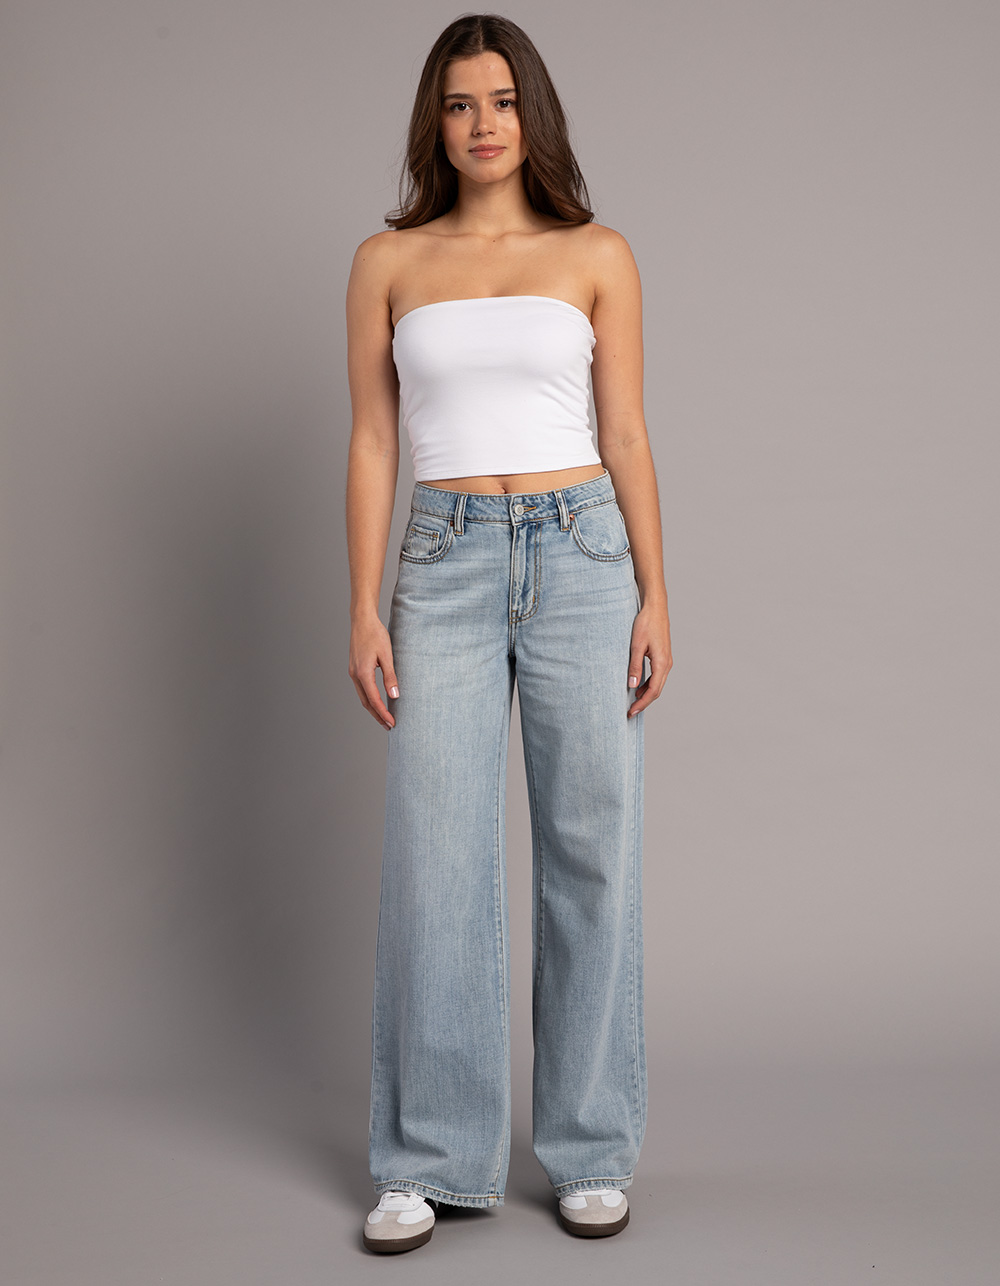 NEW RSQ Jeans Tan Brown Manhattan High Rise Size 7/28